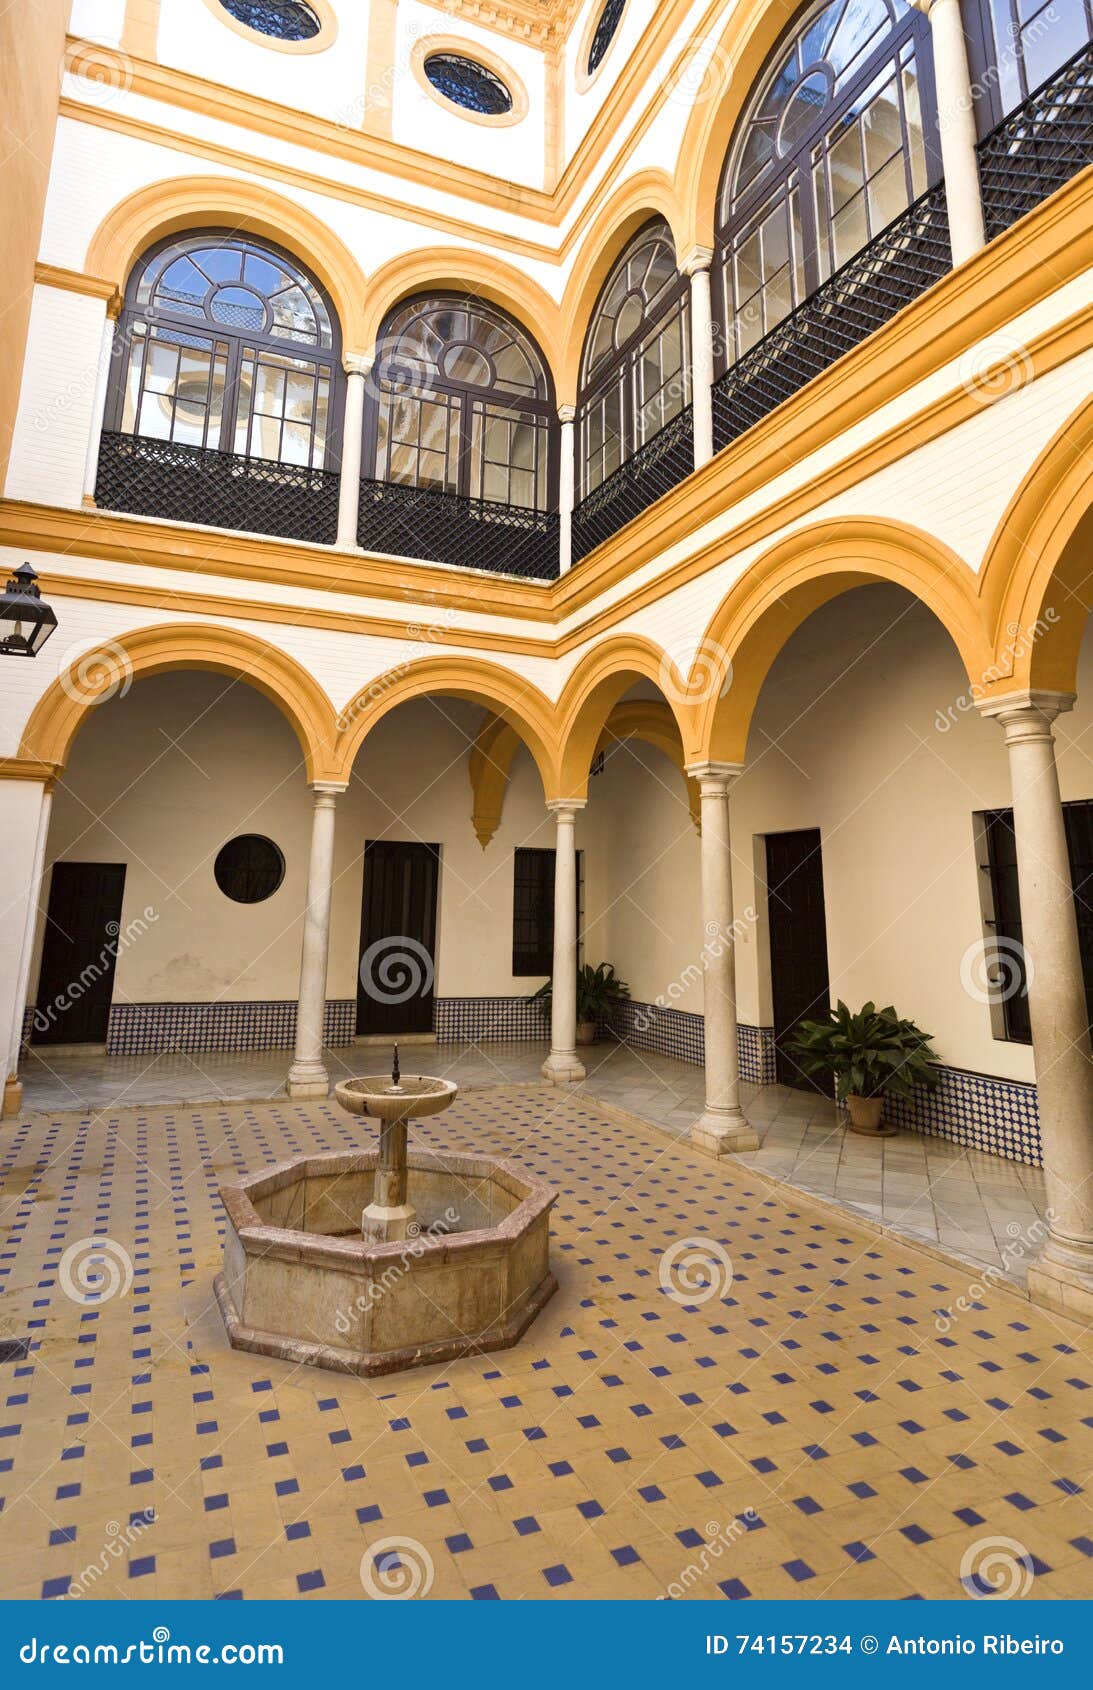 seville alcazar house of trade